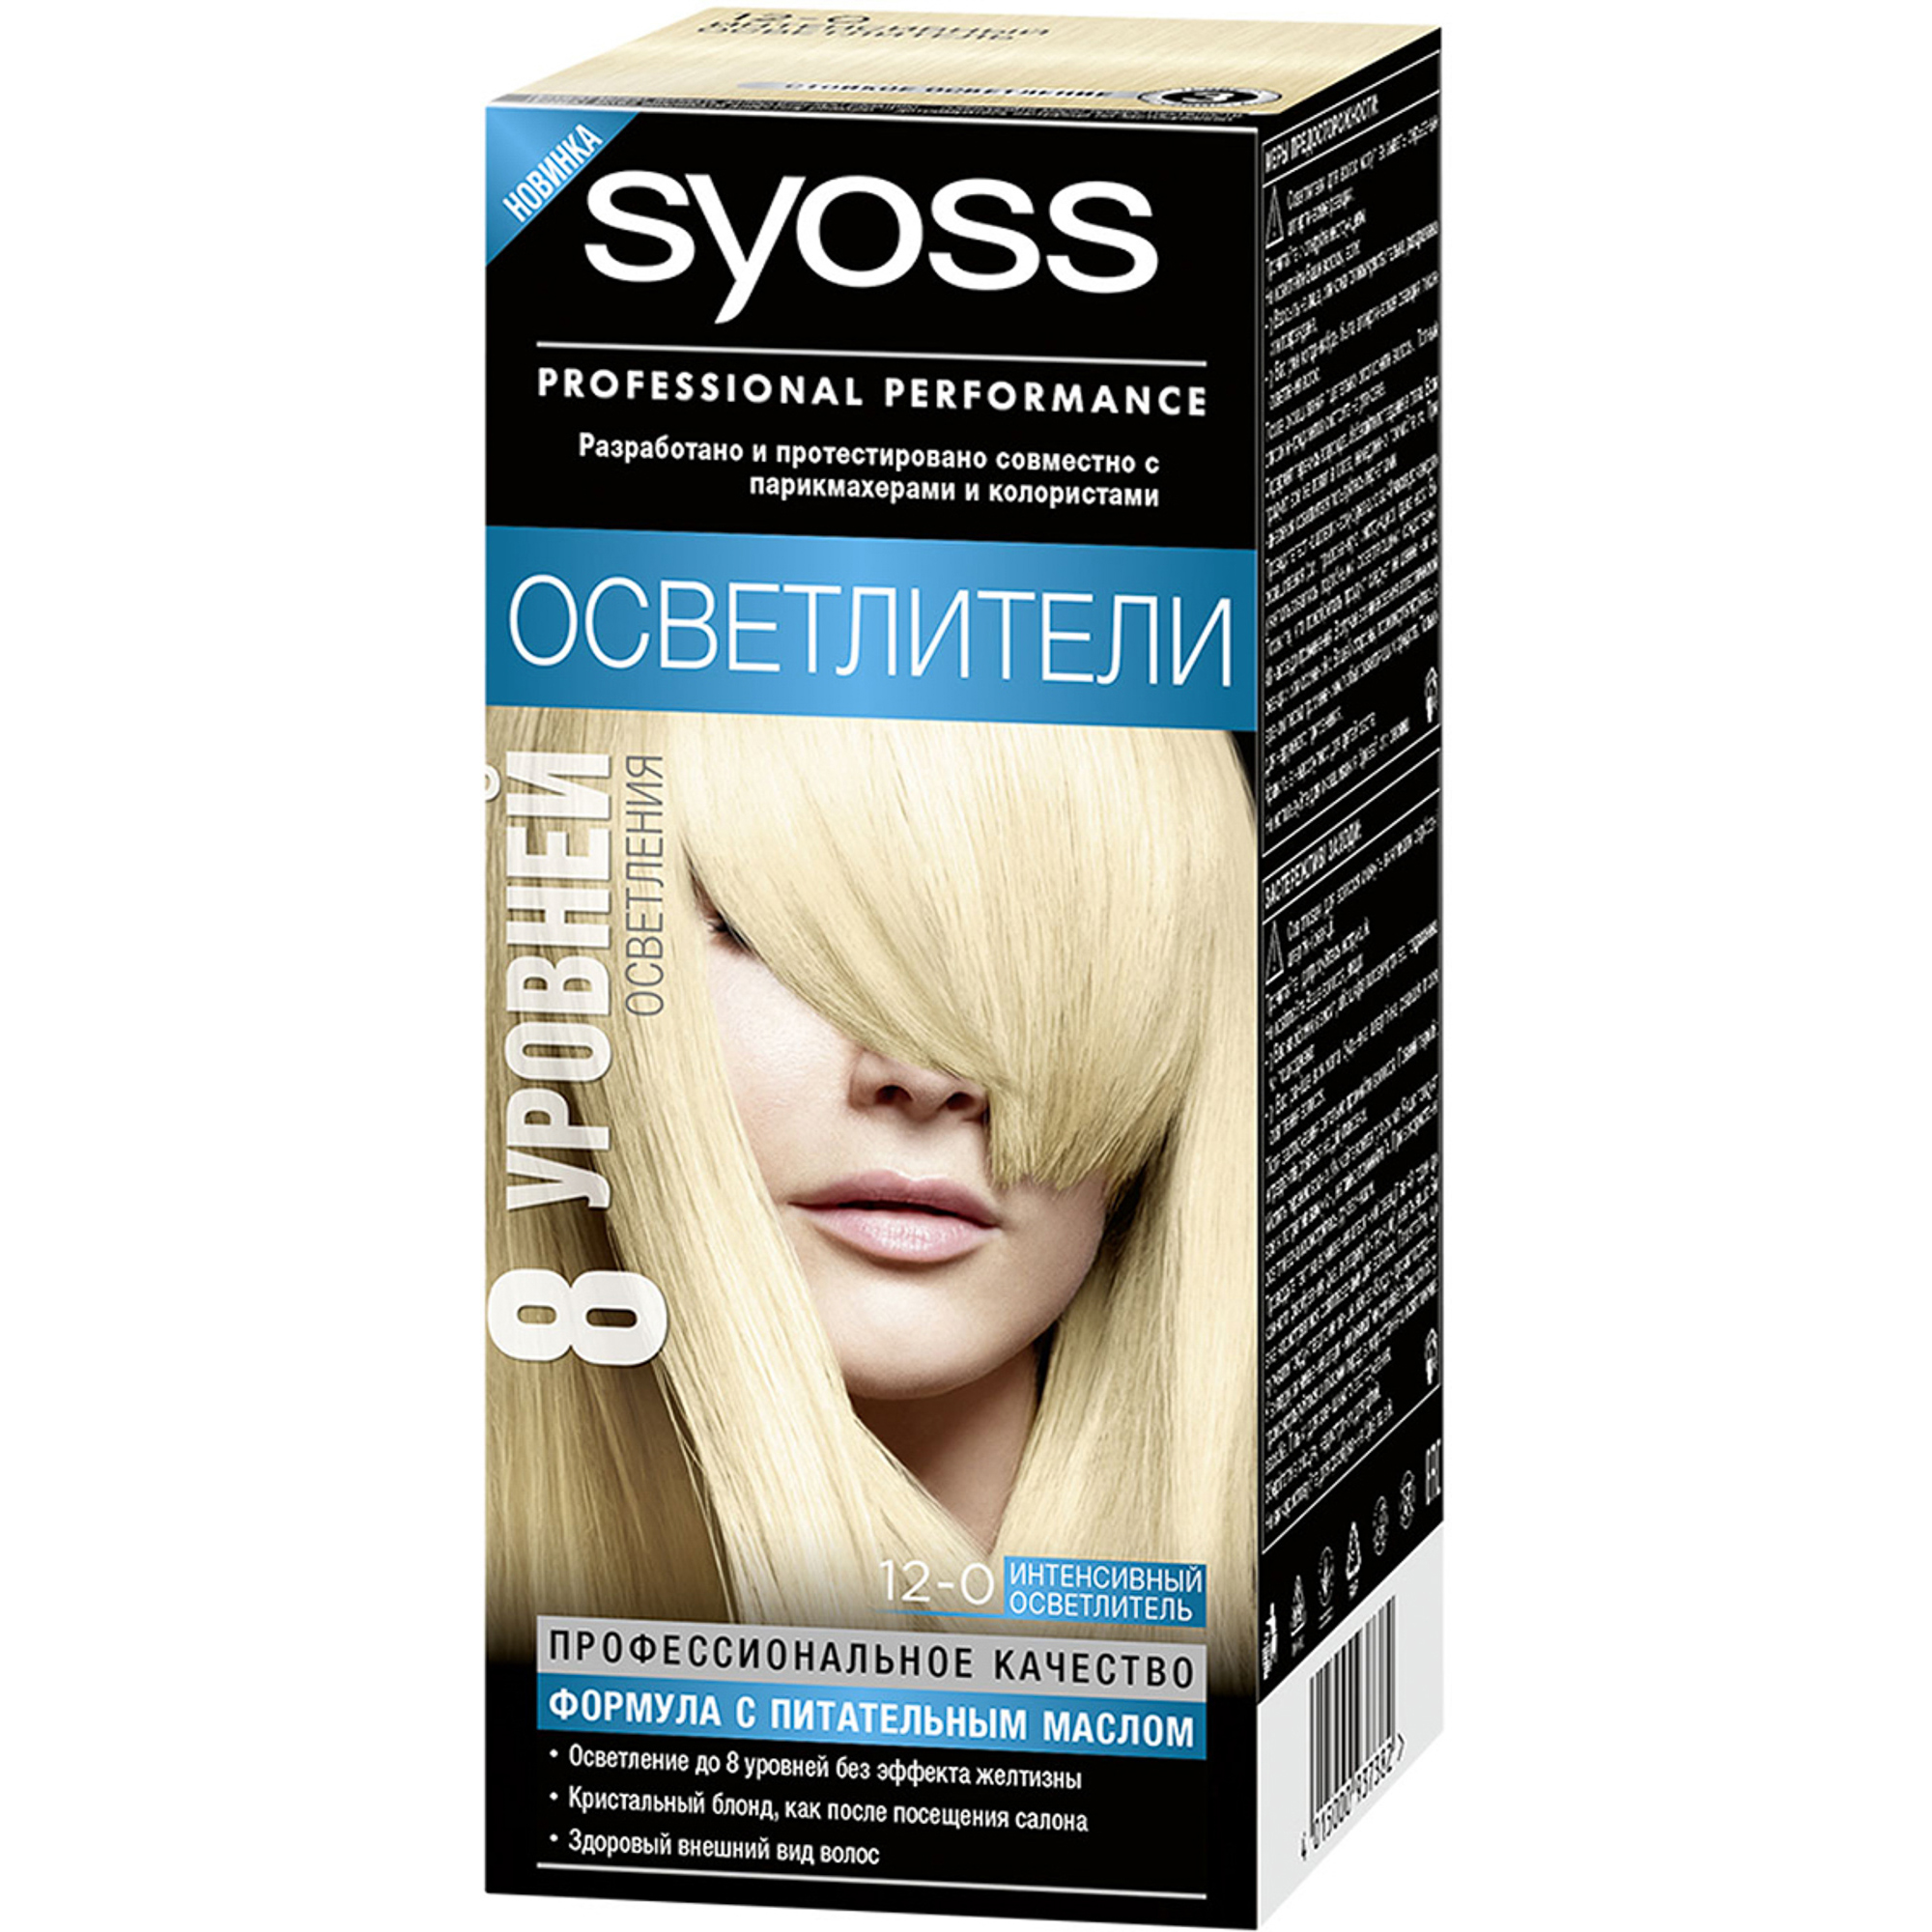 Краска для волос Syoss Осветлители 12-0 Интенсивный осветлитель крем тальк для ног интенсивный 100мл